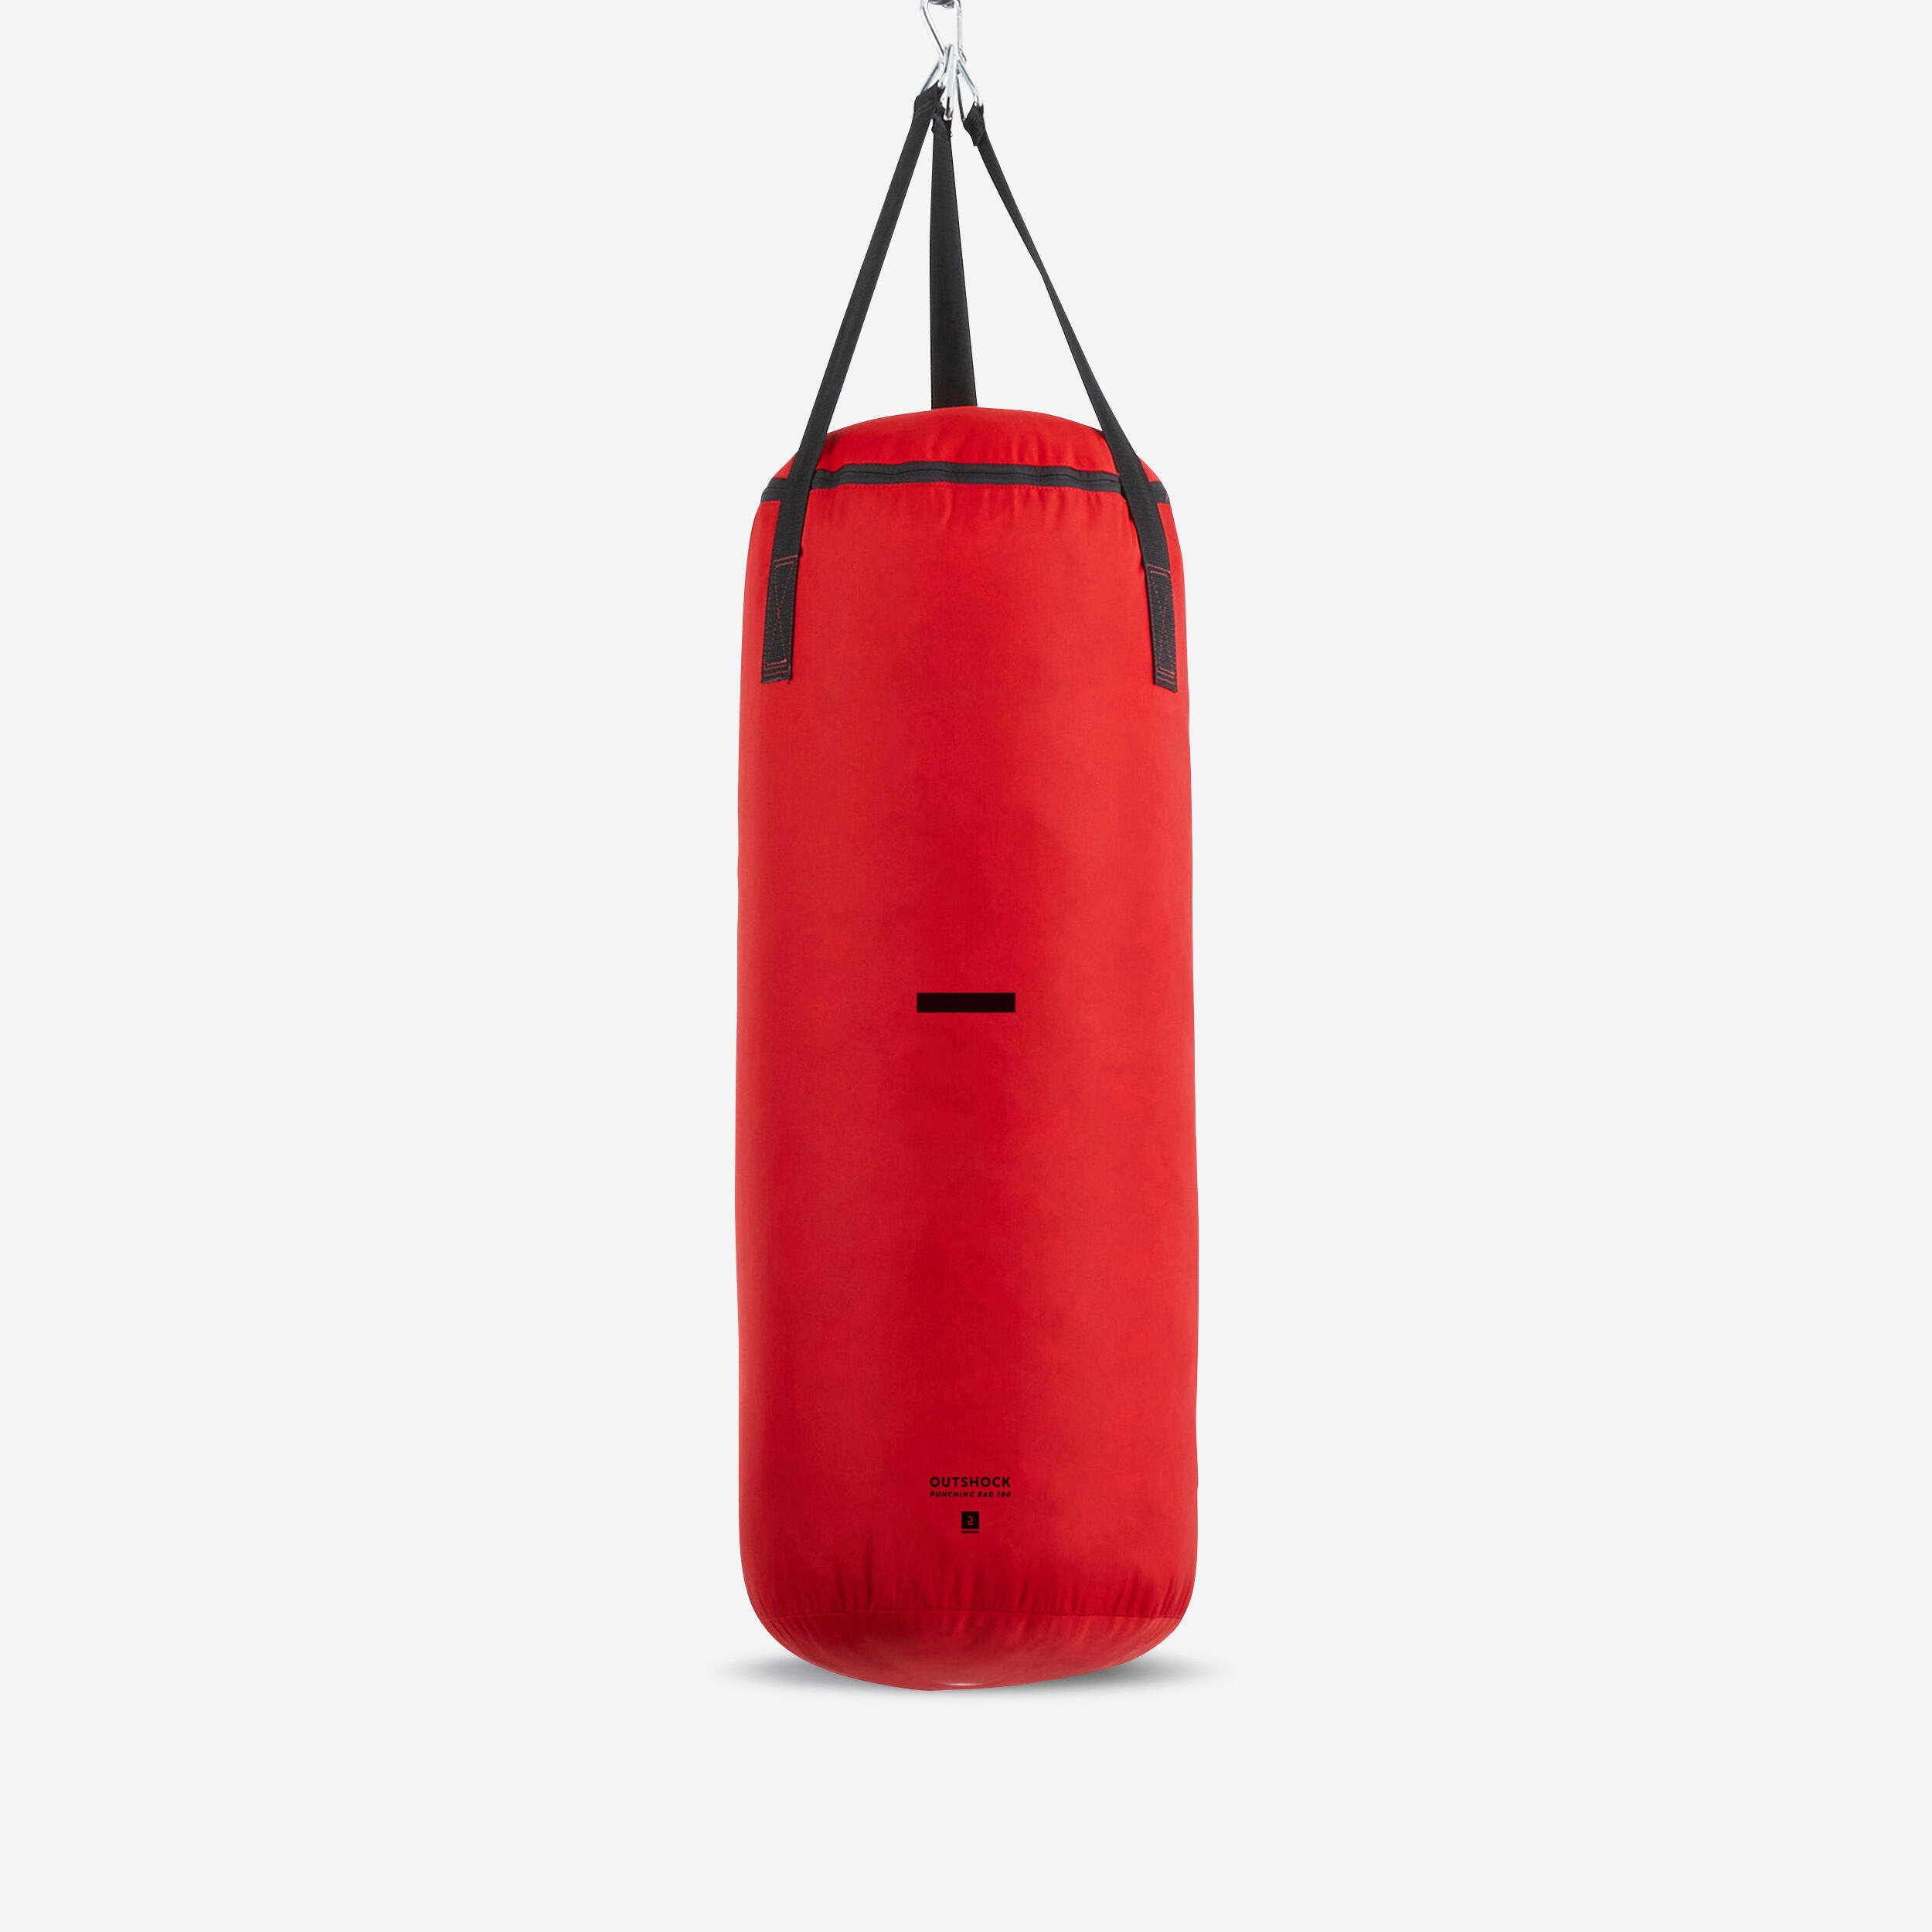 Punching Bag 14 kg - Red 1/7